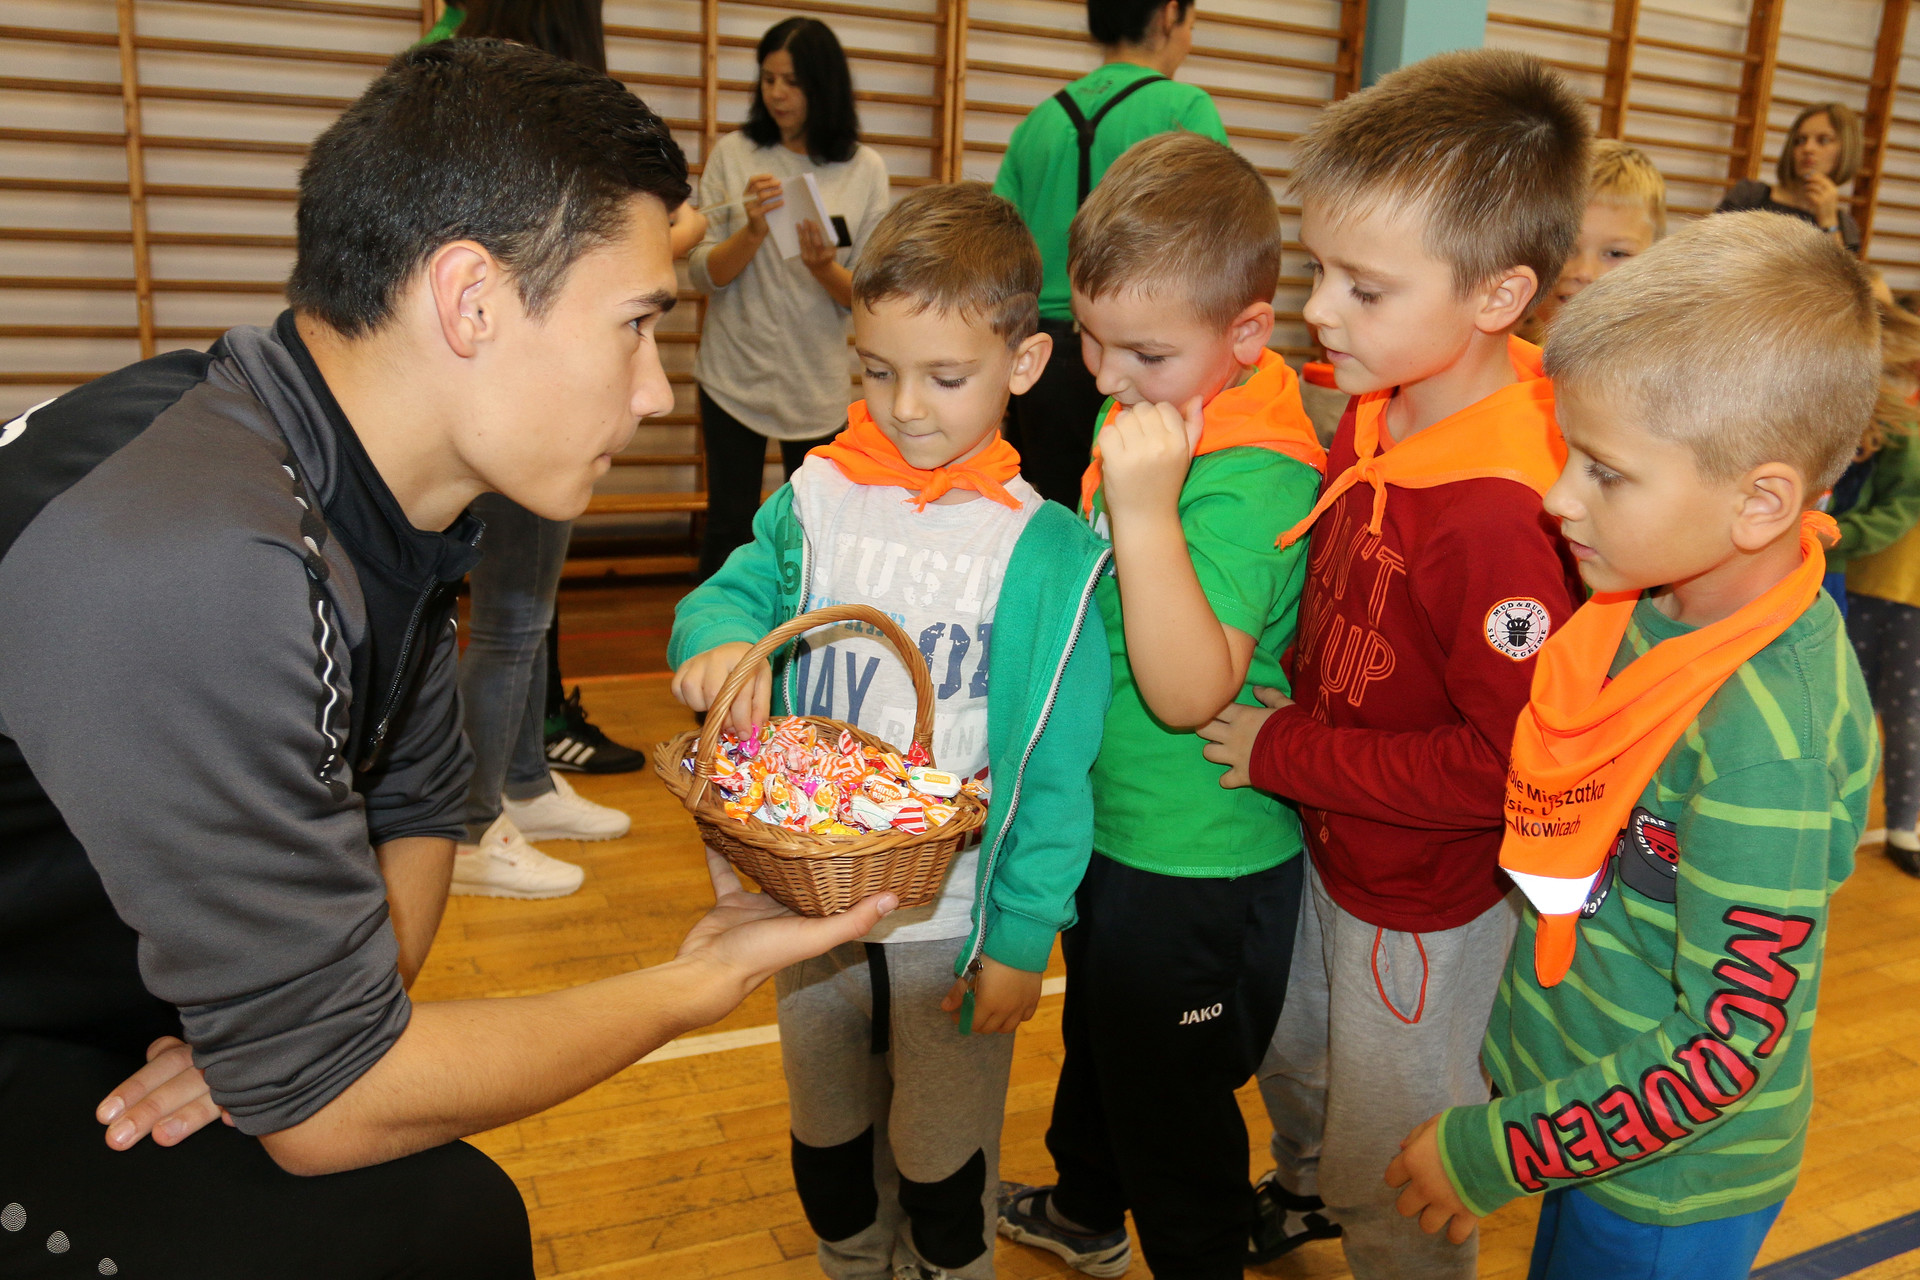 Piłkarze spotkali się z dziećmi (FOTO)